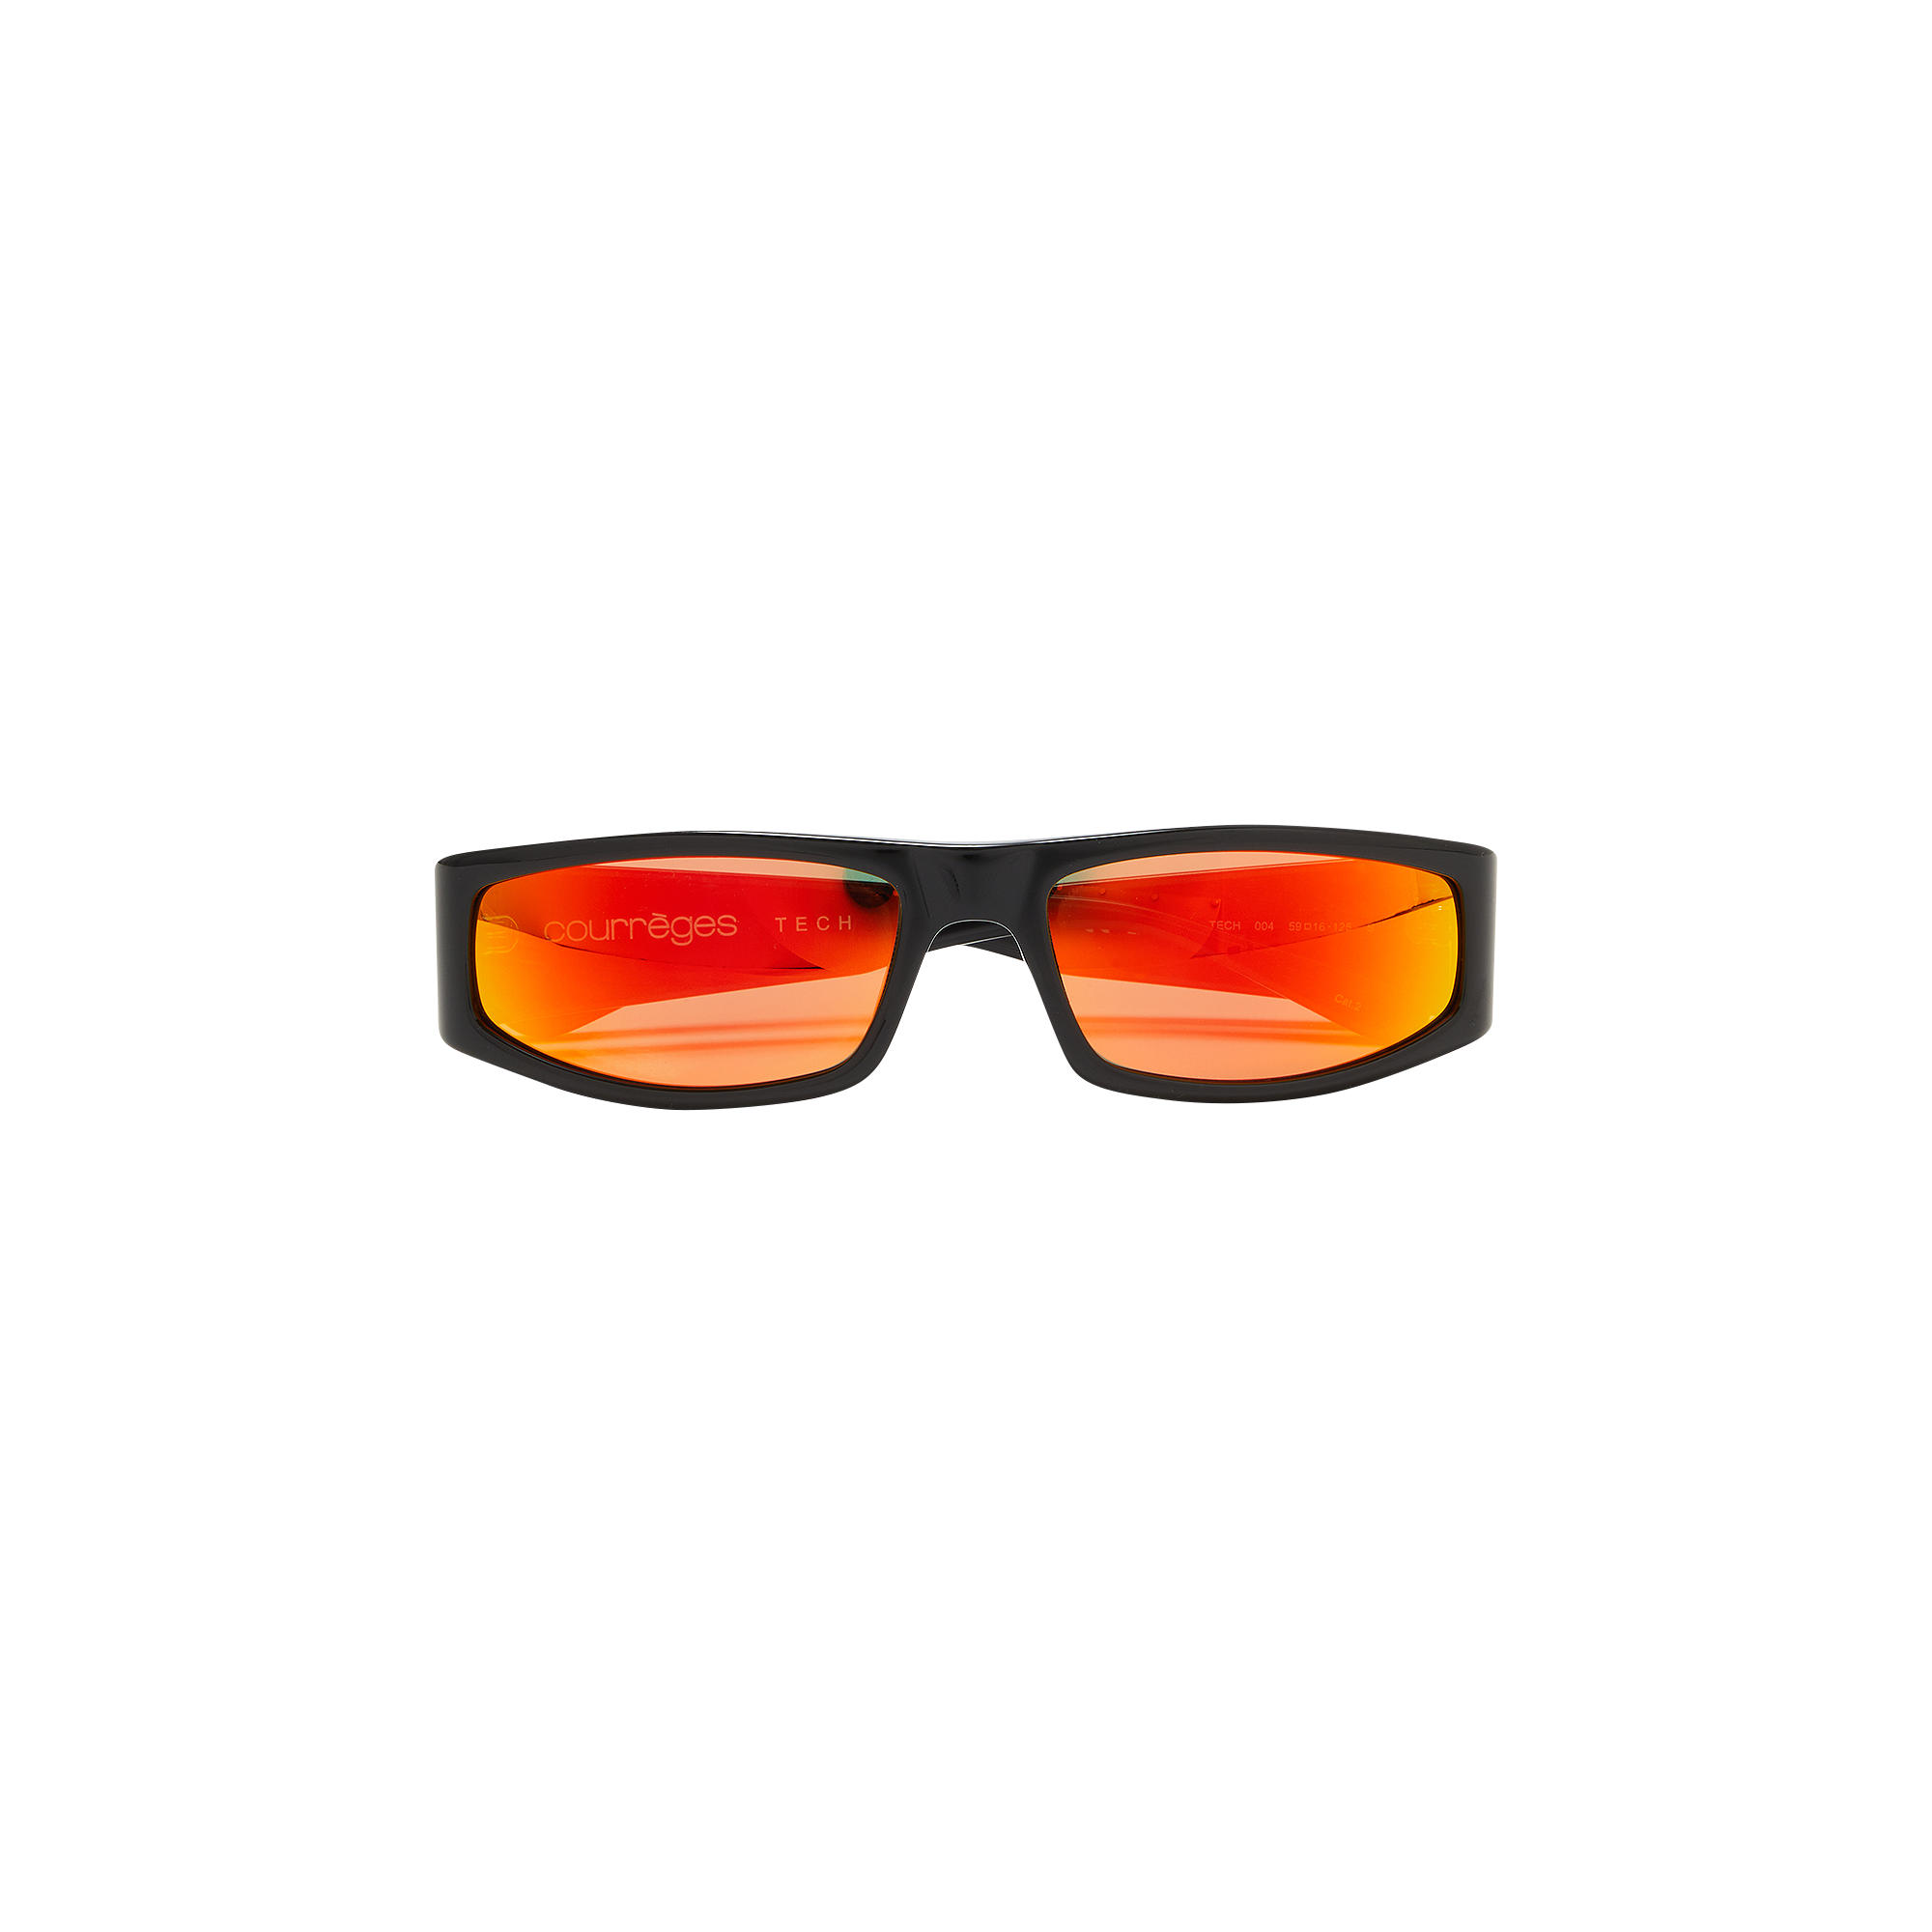 Pre-owned Courrèges Tech Sunglasses 'black/sunset'